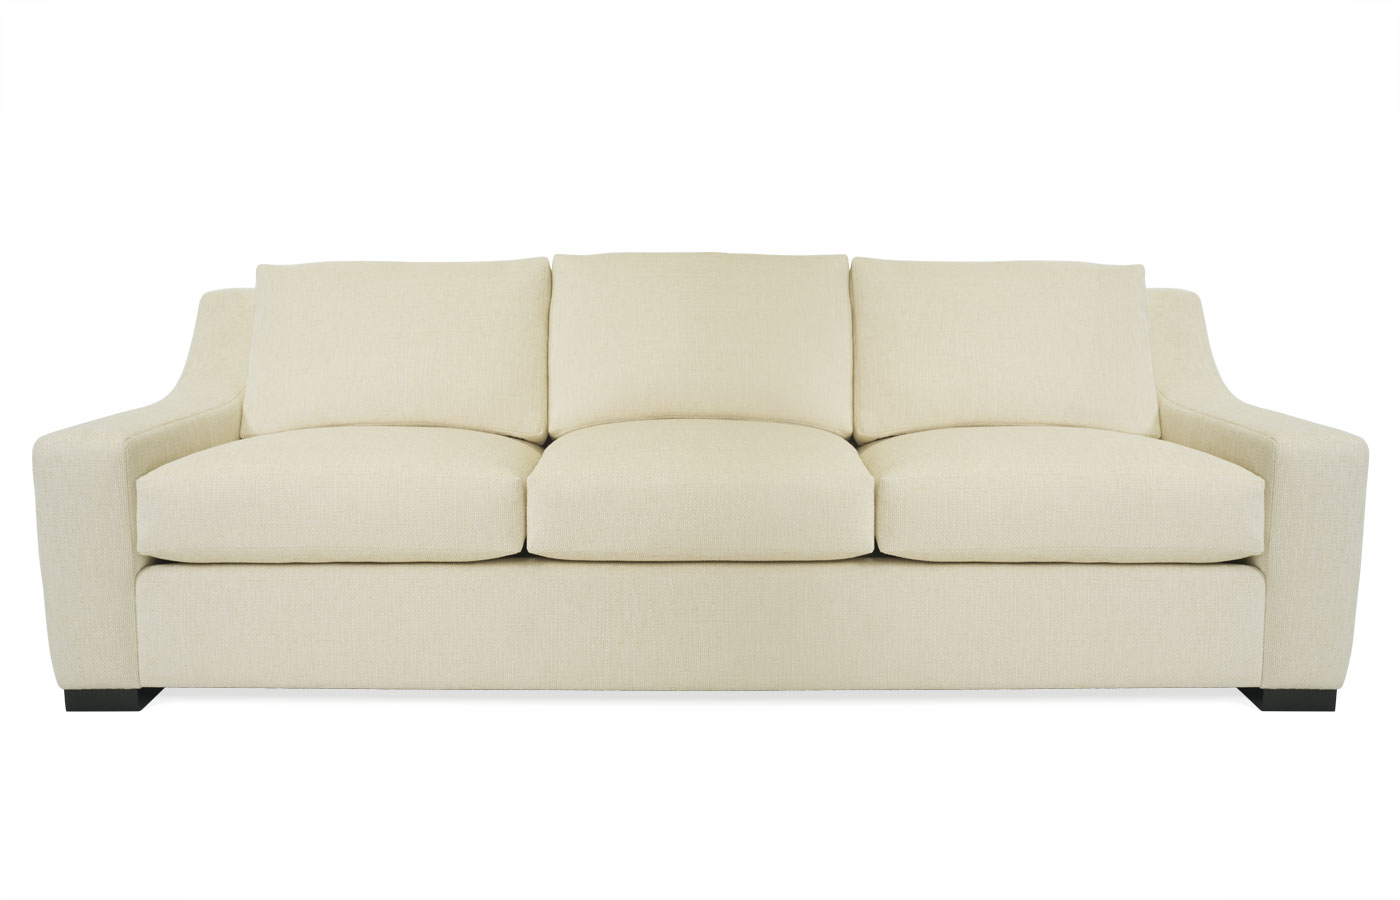 aspen sofa bed reviews